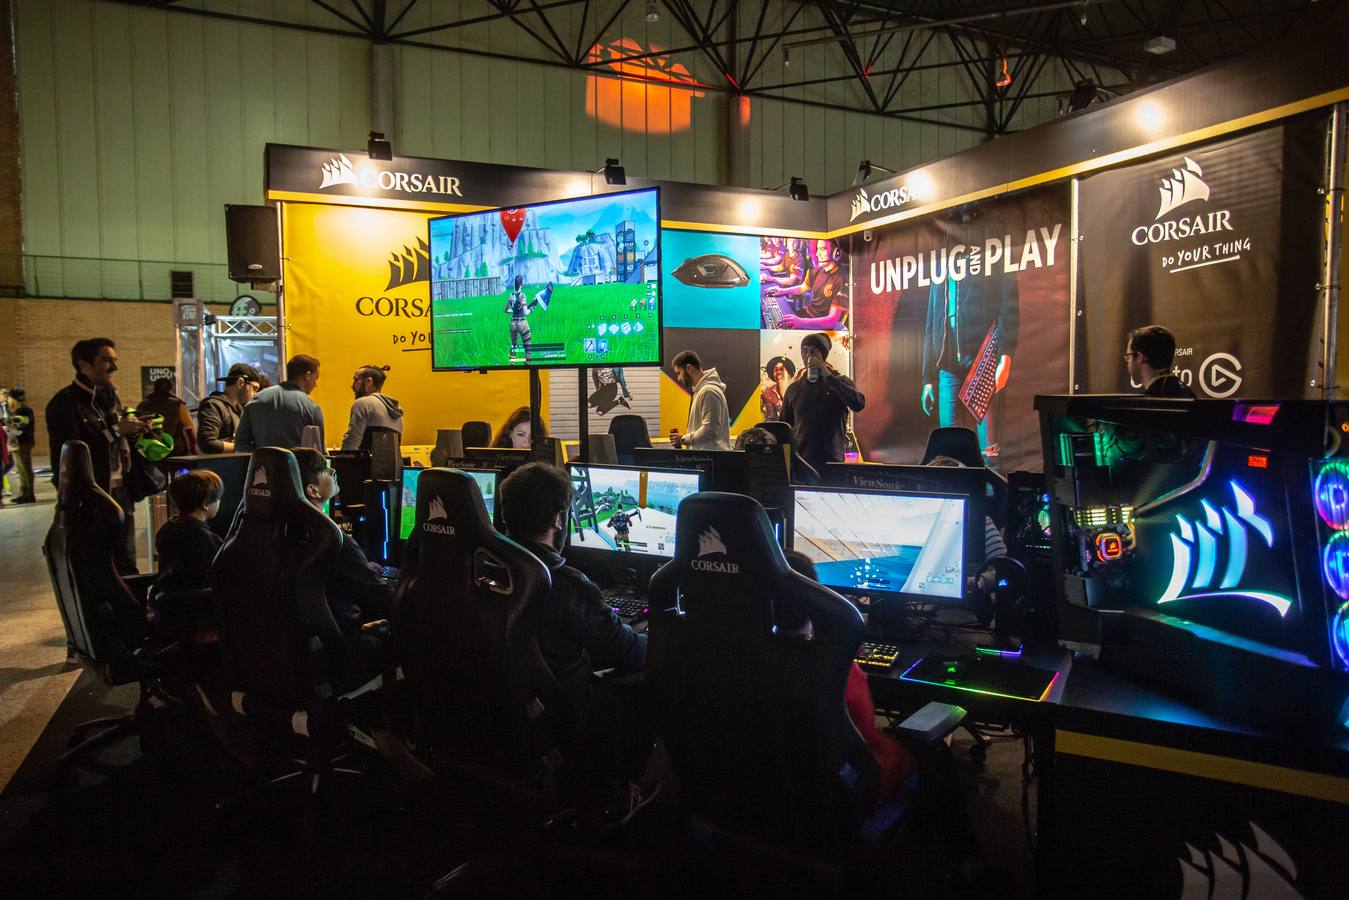 Los asistentes a DramHack Sevilla pueden disfrutar de diversos concursos, actividades y premios relacionados con el «Fornite», así como jugar a videojuegos como «Battlefield V», «Call of Duty» o «League of Legends».